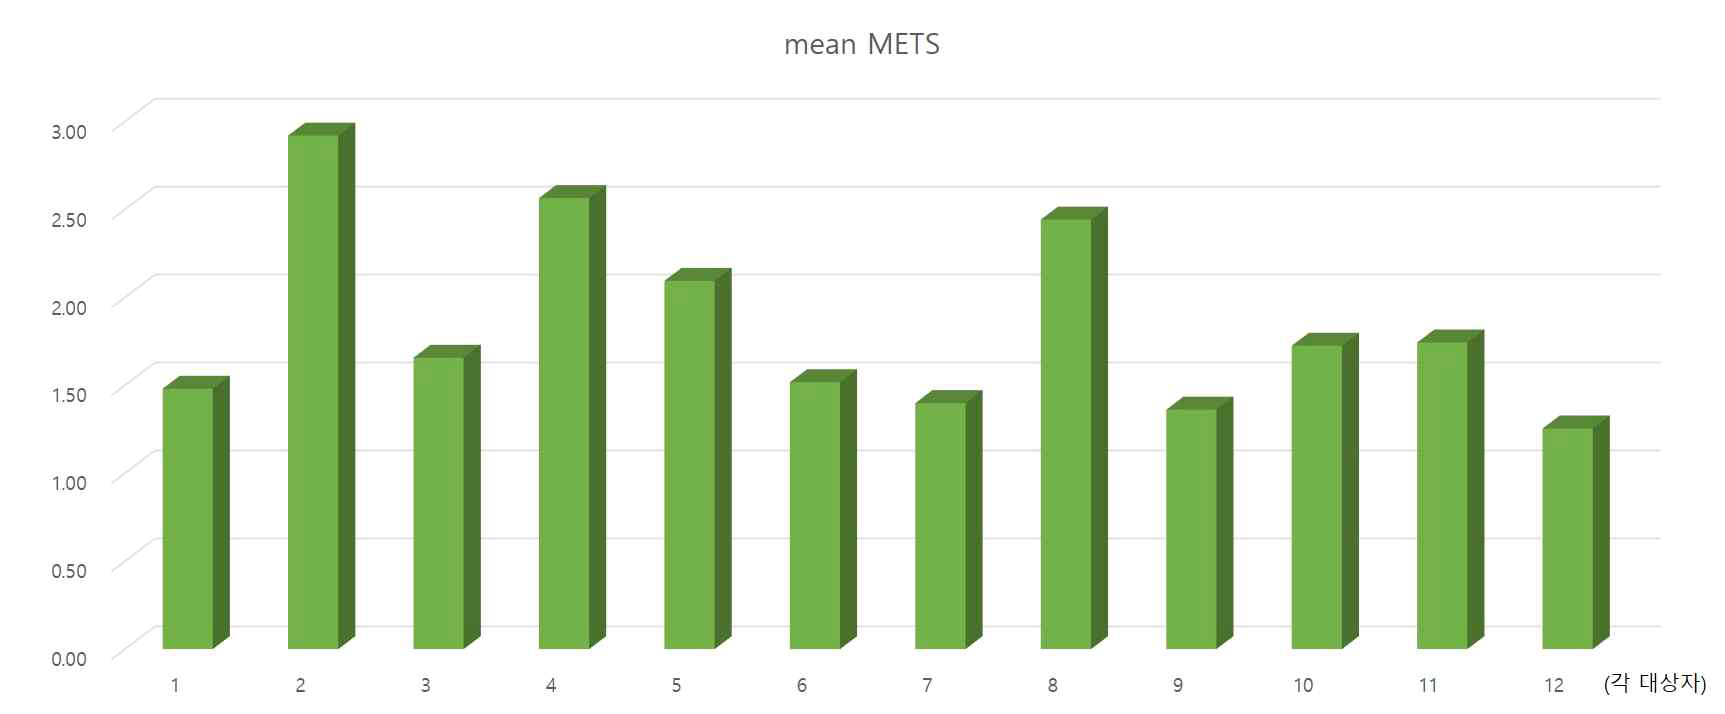 각 대상자 별 평균 METS값 산출